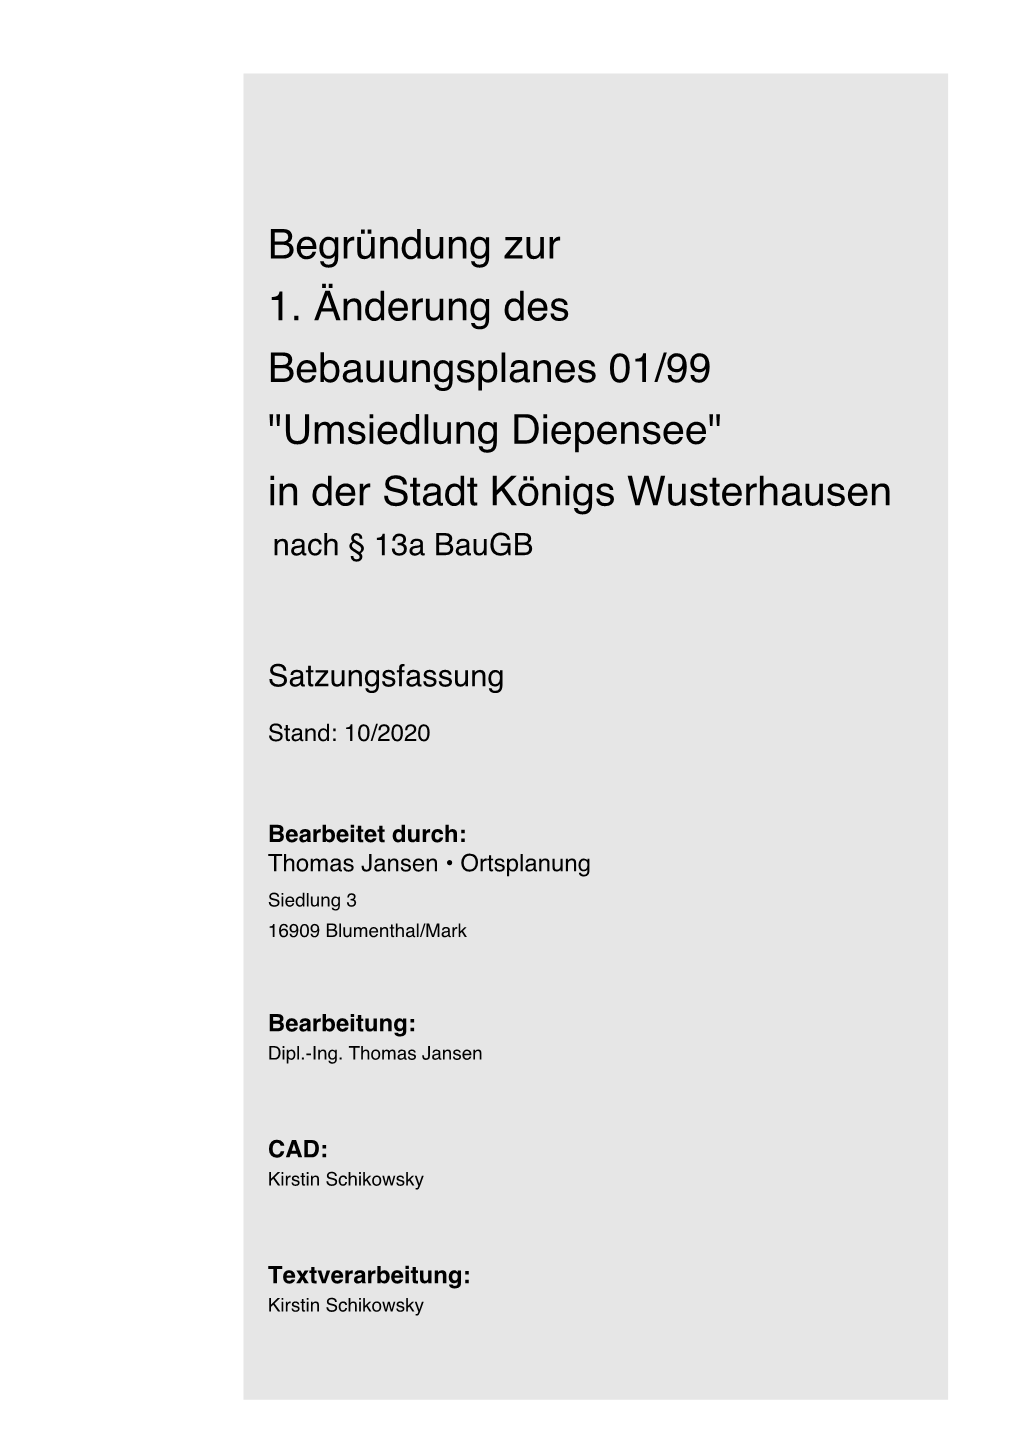 Begründung Zur 1. Änderung Des Bebauungsplanes 01/99 "Umsiedlung Diepensee" in Der Stadt Königs Wusterhausen Nach § 13A Baugb